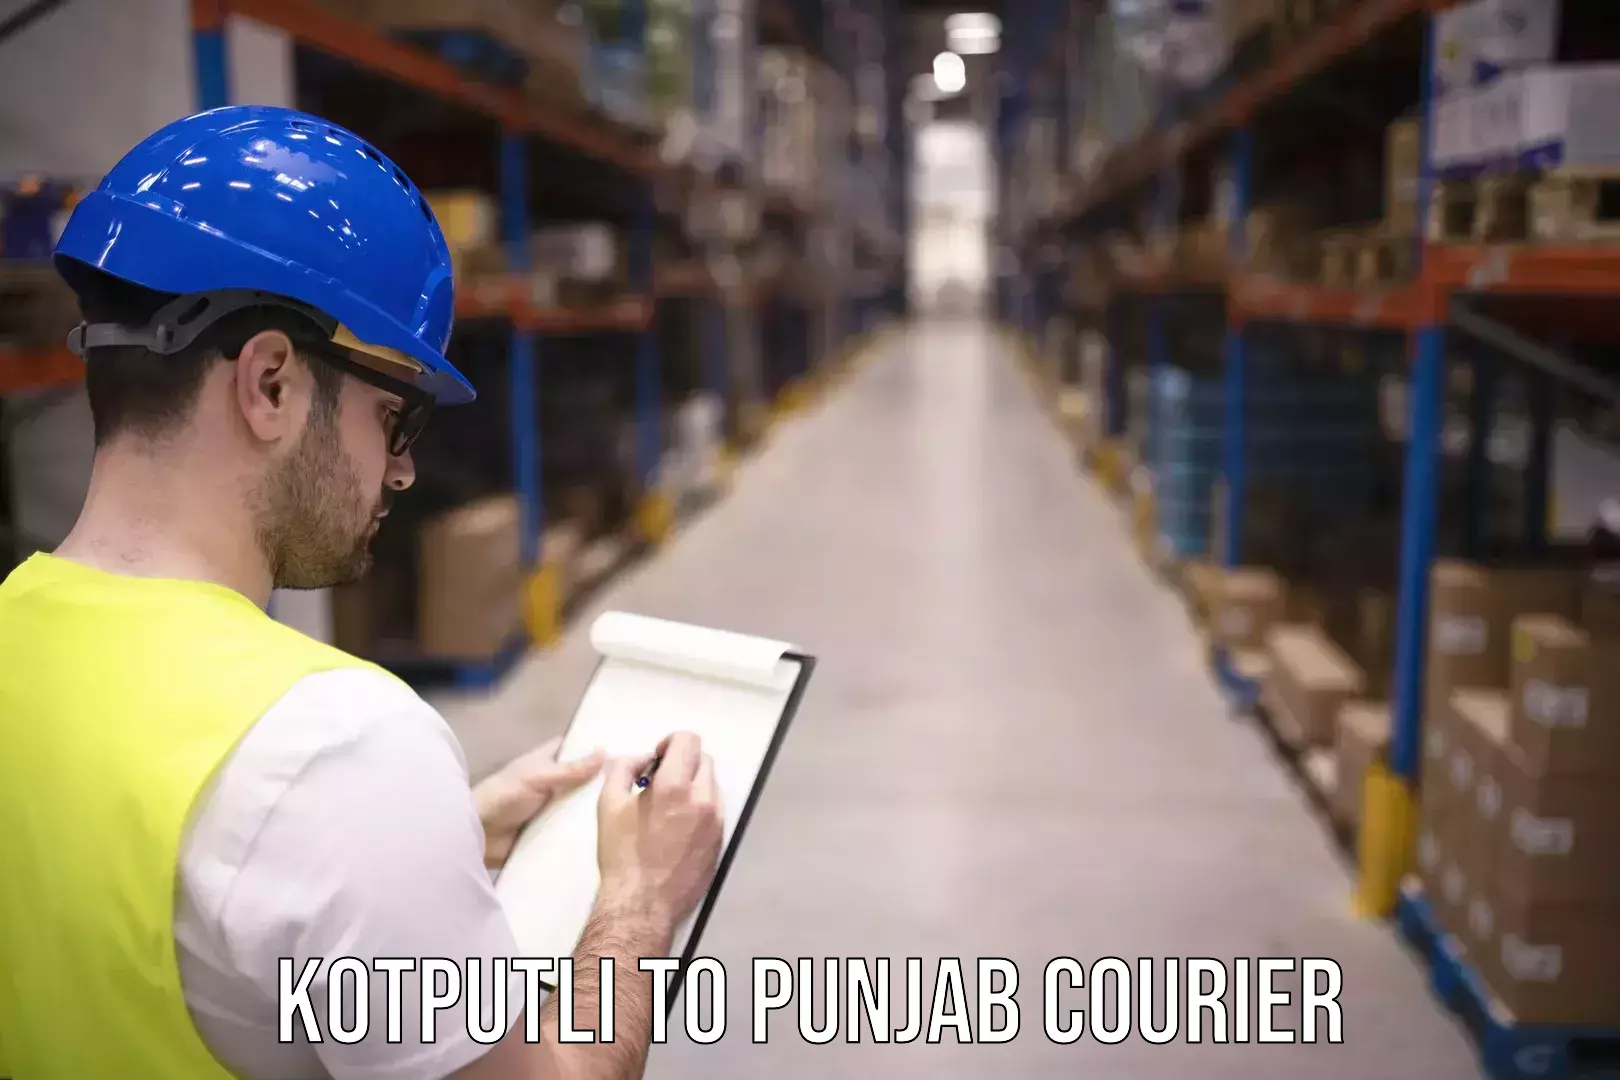 Package tracking Kotputli to Punjab